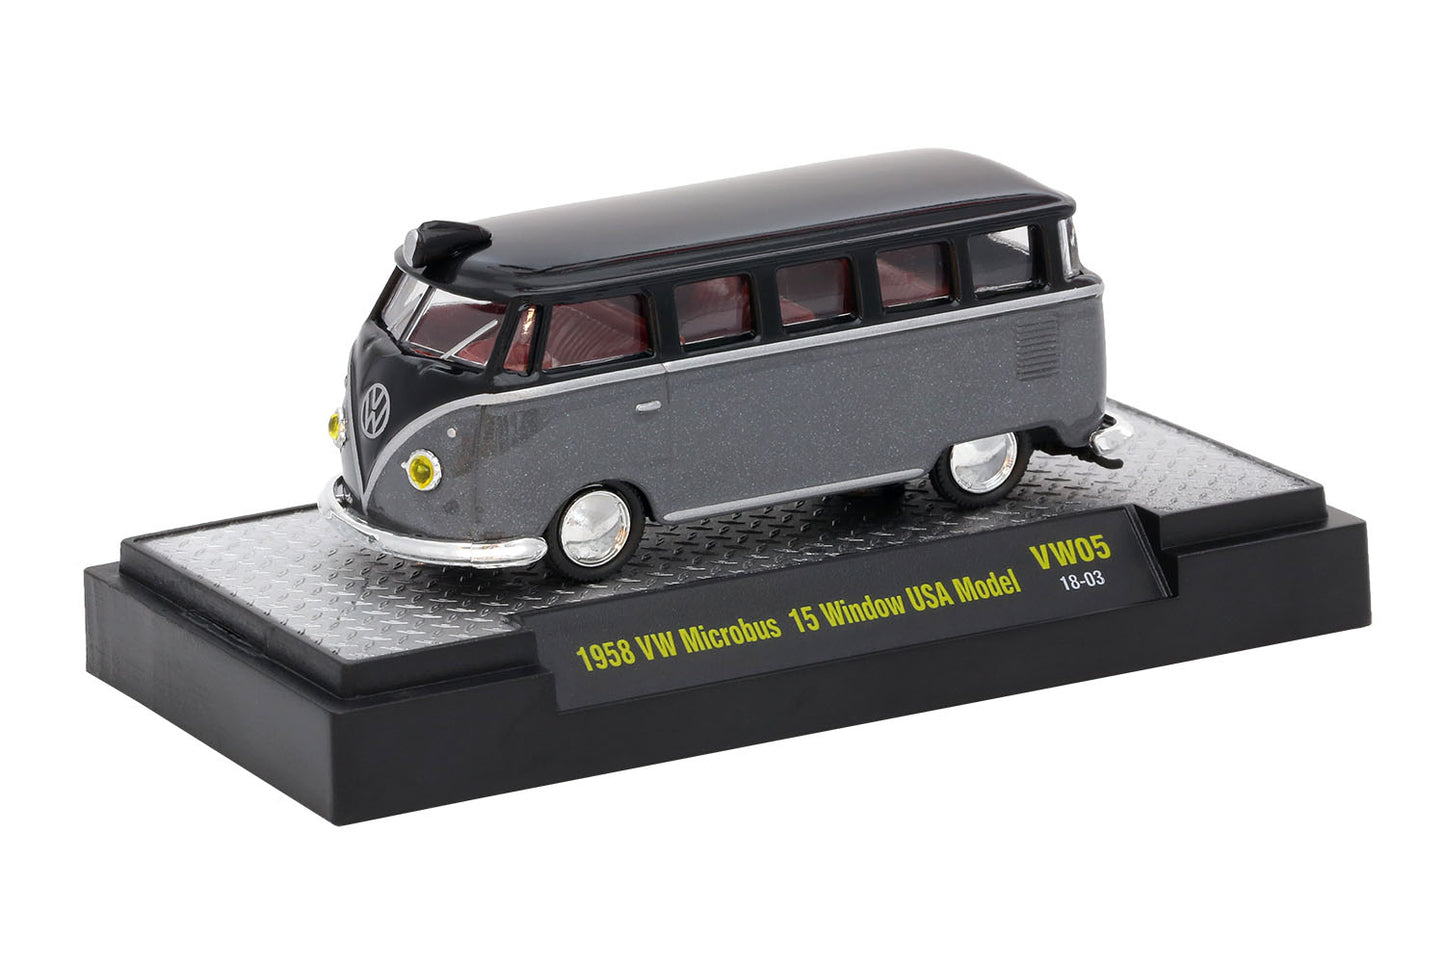 Release VW05 - 1958 VW Microbus 15 Window USA Model Die Cast Model